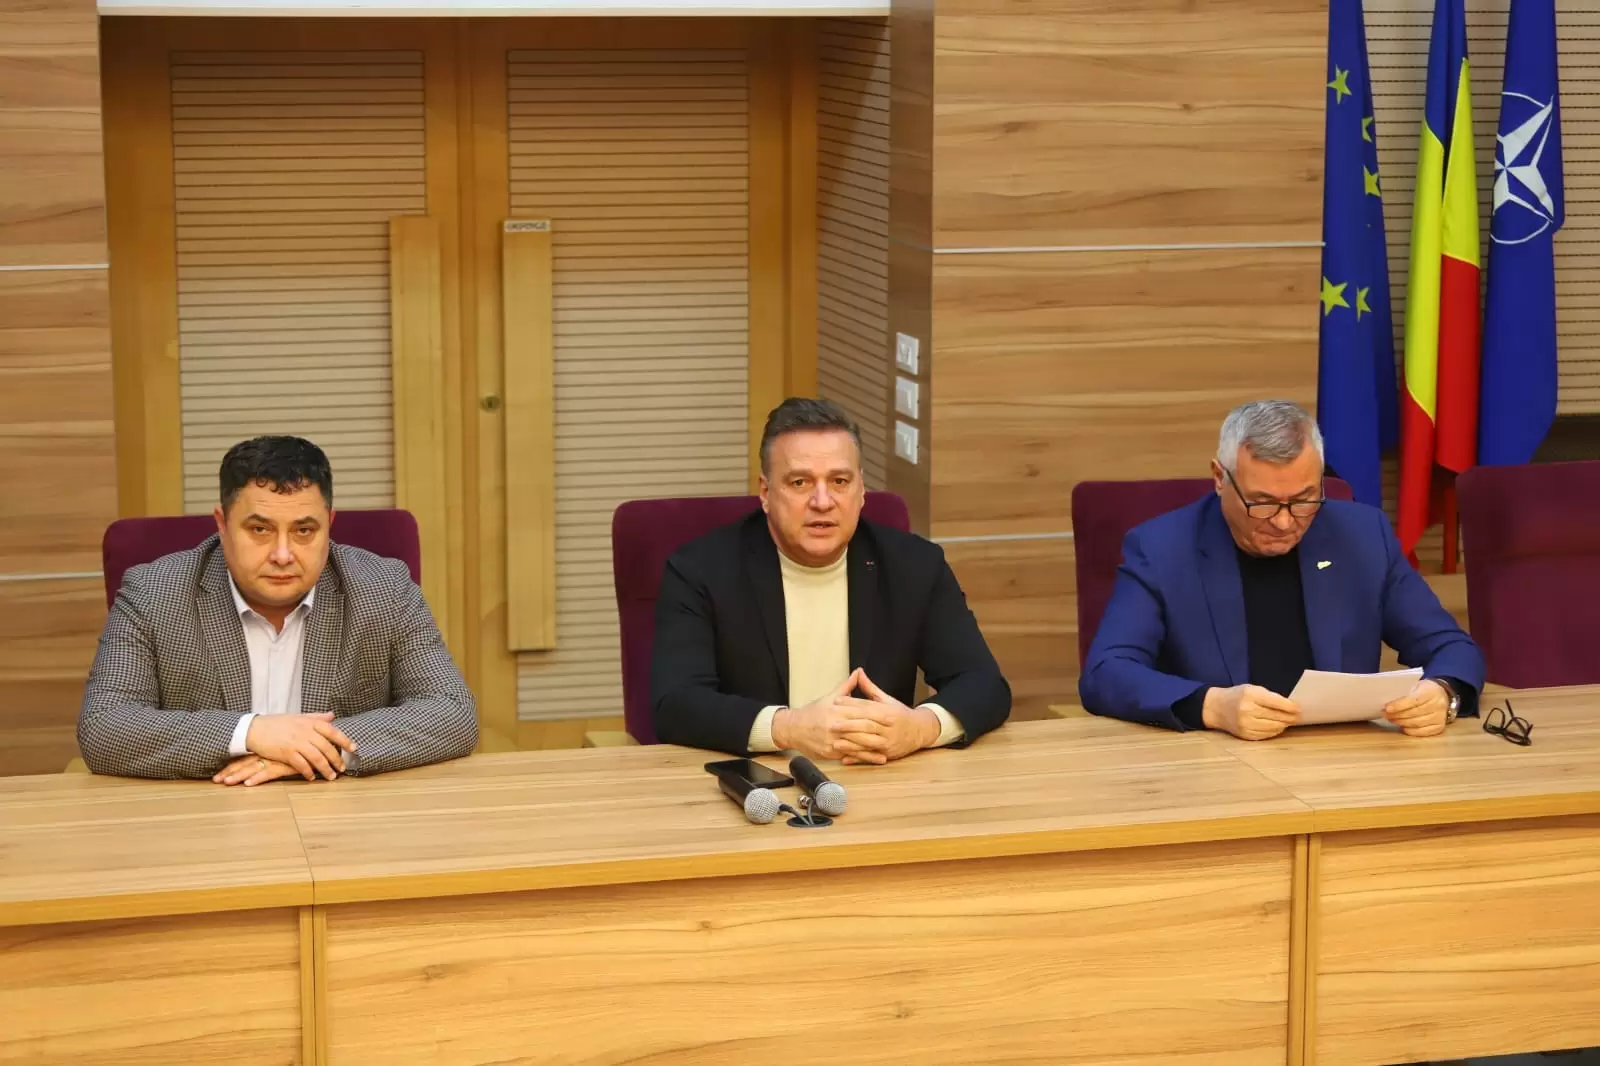 V. Iliuță: Am discutat strategii pentru a rezolva aceste probleme, iar Consiliul Județean Călărași se angajează să găsească soluții eficiente